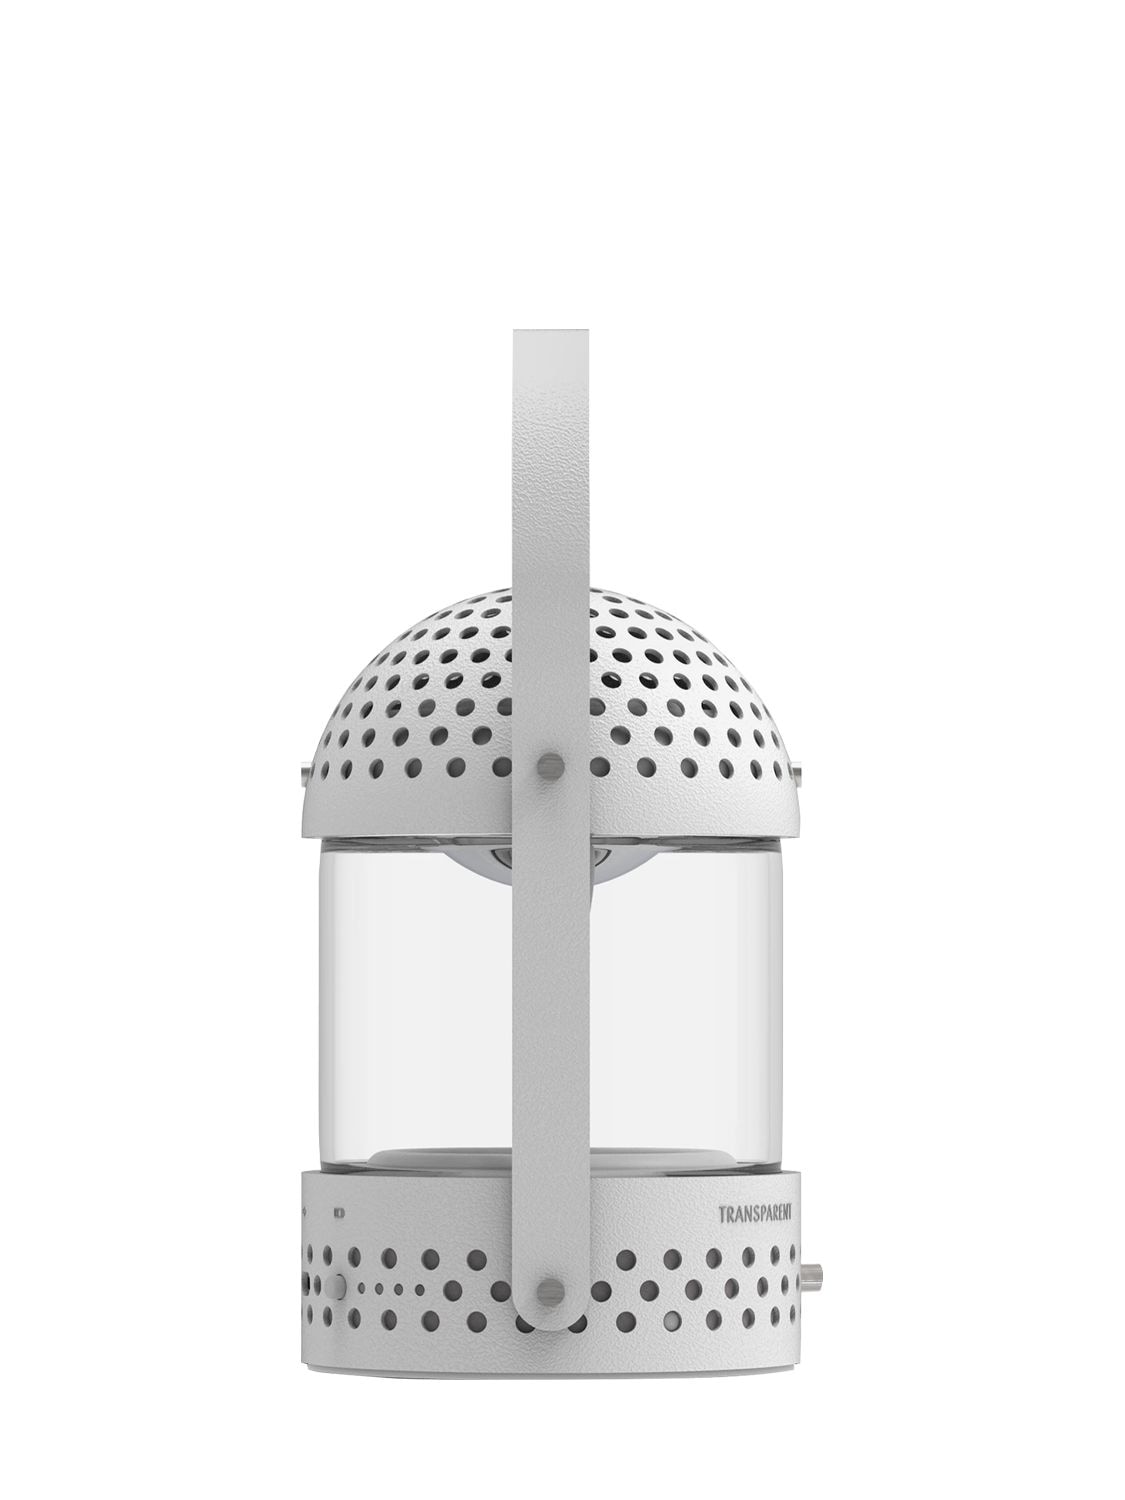 Shop Transparent Light Speaker In White